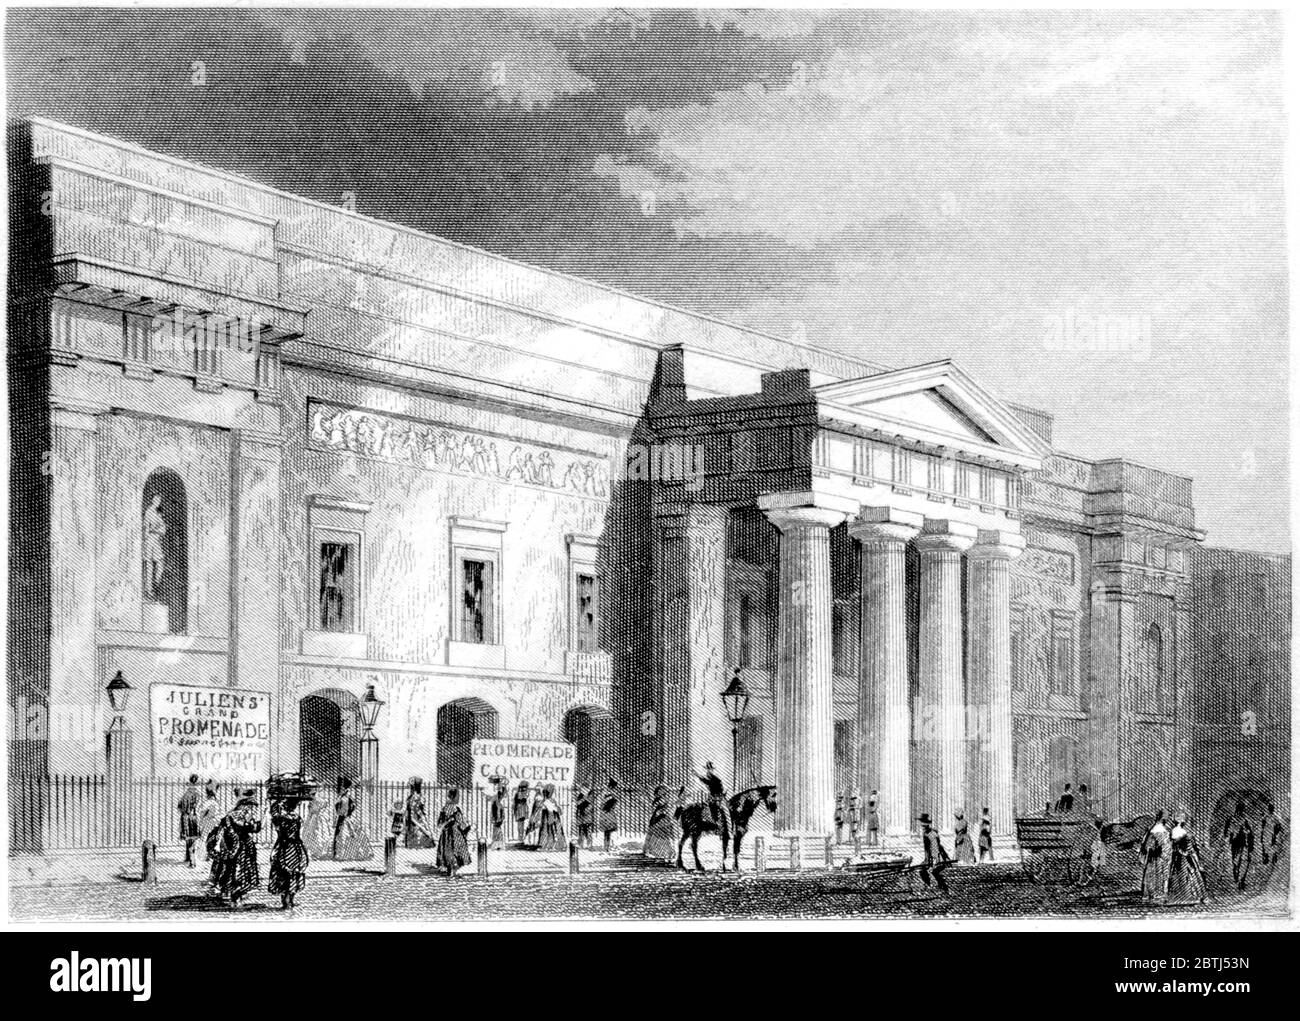 Incisione del Covent Garden Theatre London scansionata ad alta risoluzione da un libro stampato nel 1851. Si ritiene che questa immagine sia priva di tutti i diritti d'autore. Foto Stock